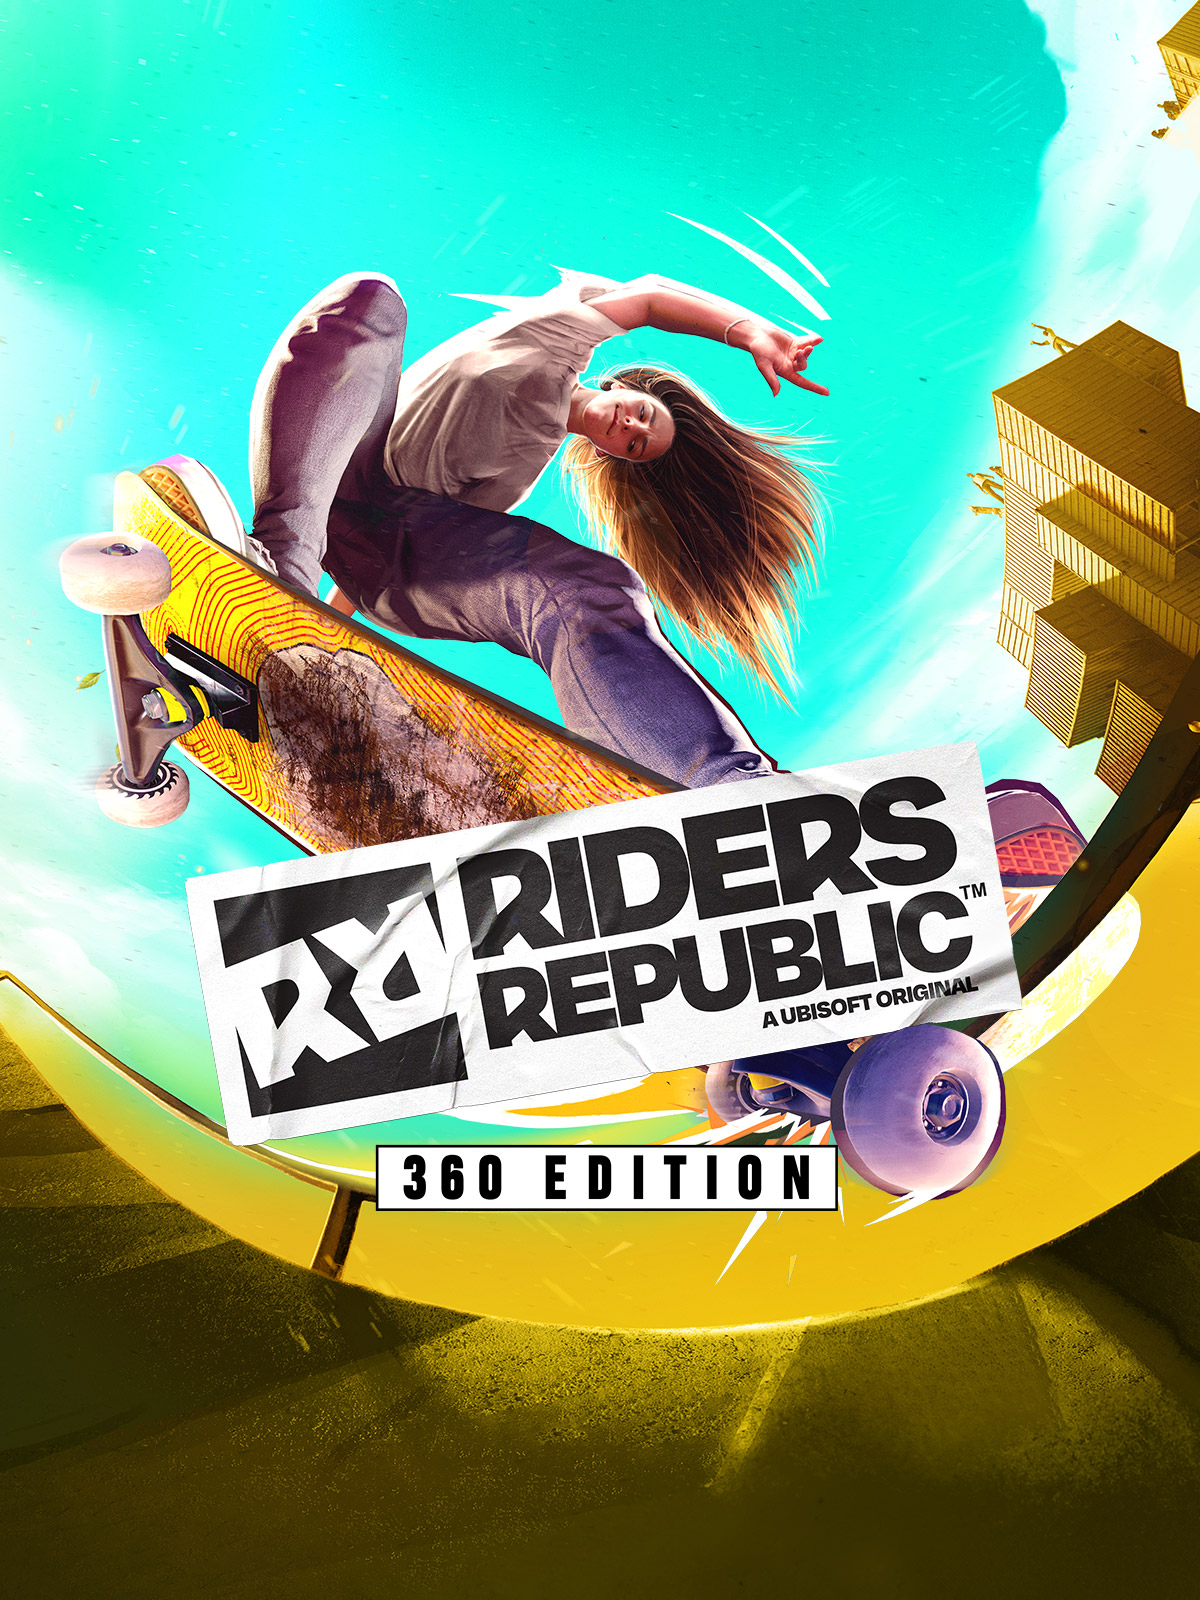 Riders Republic™ 360 Edition